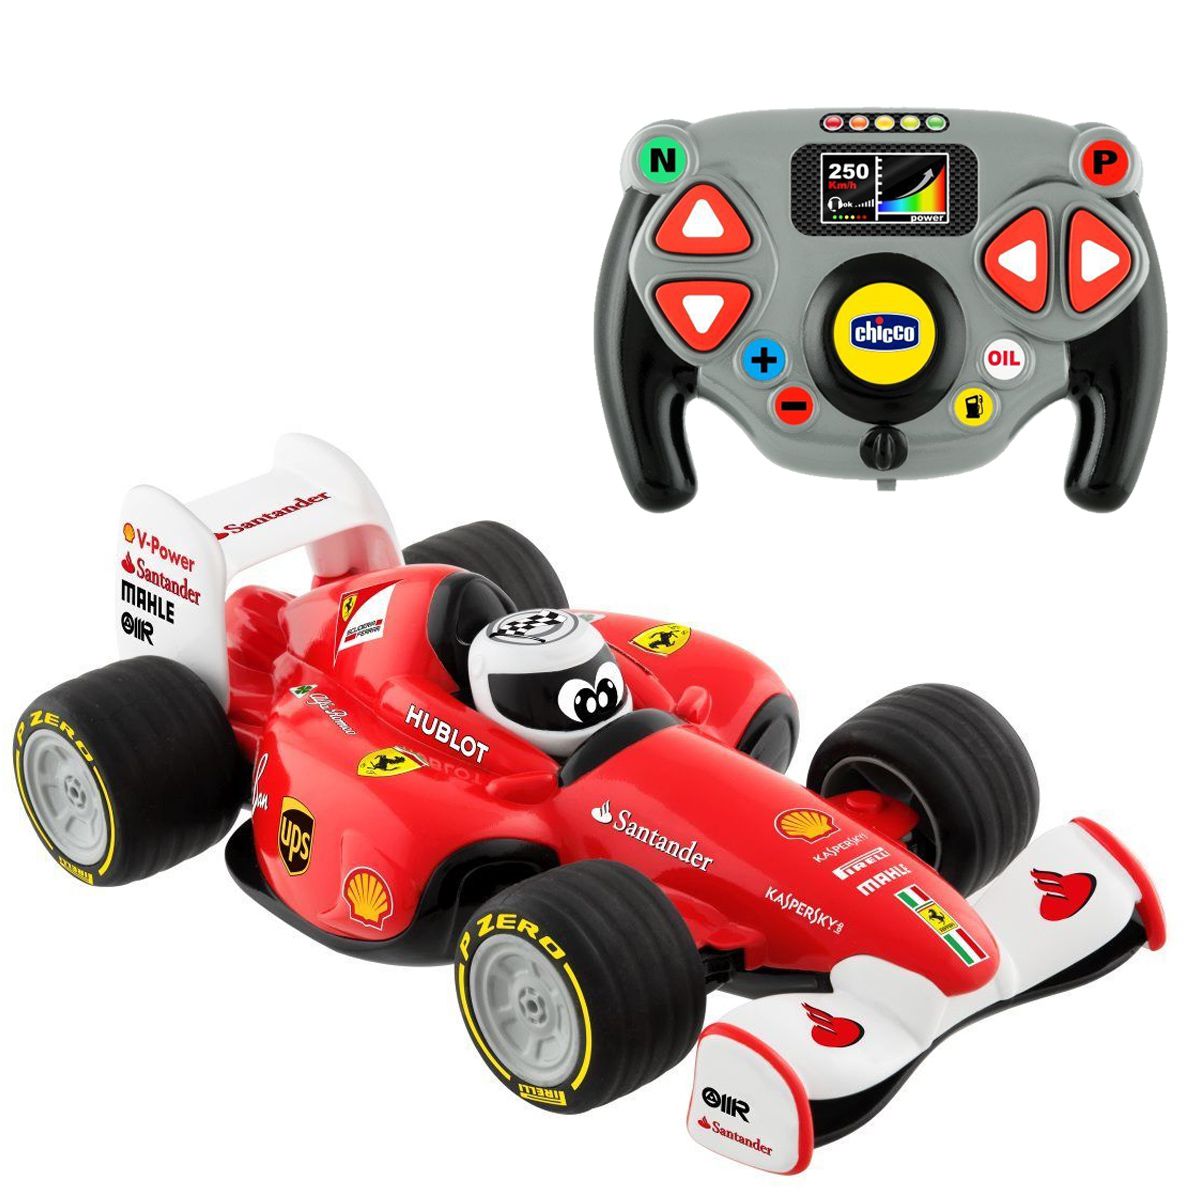 Jogo de Quarto Infantil Carro Fórmula 1 Vermelho